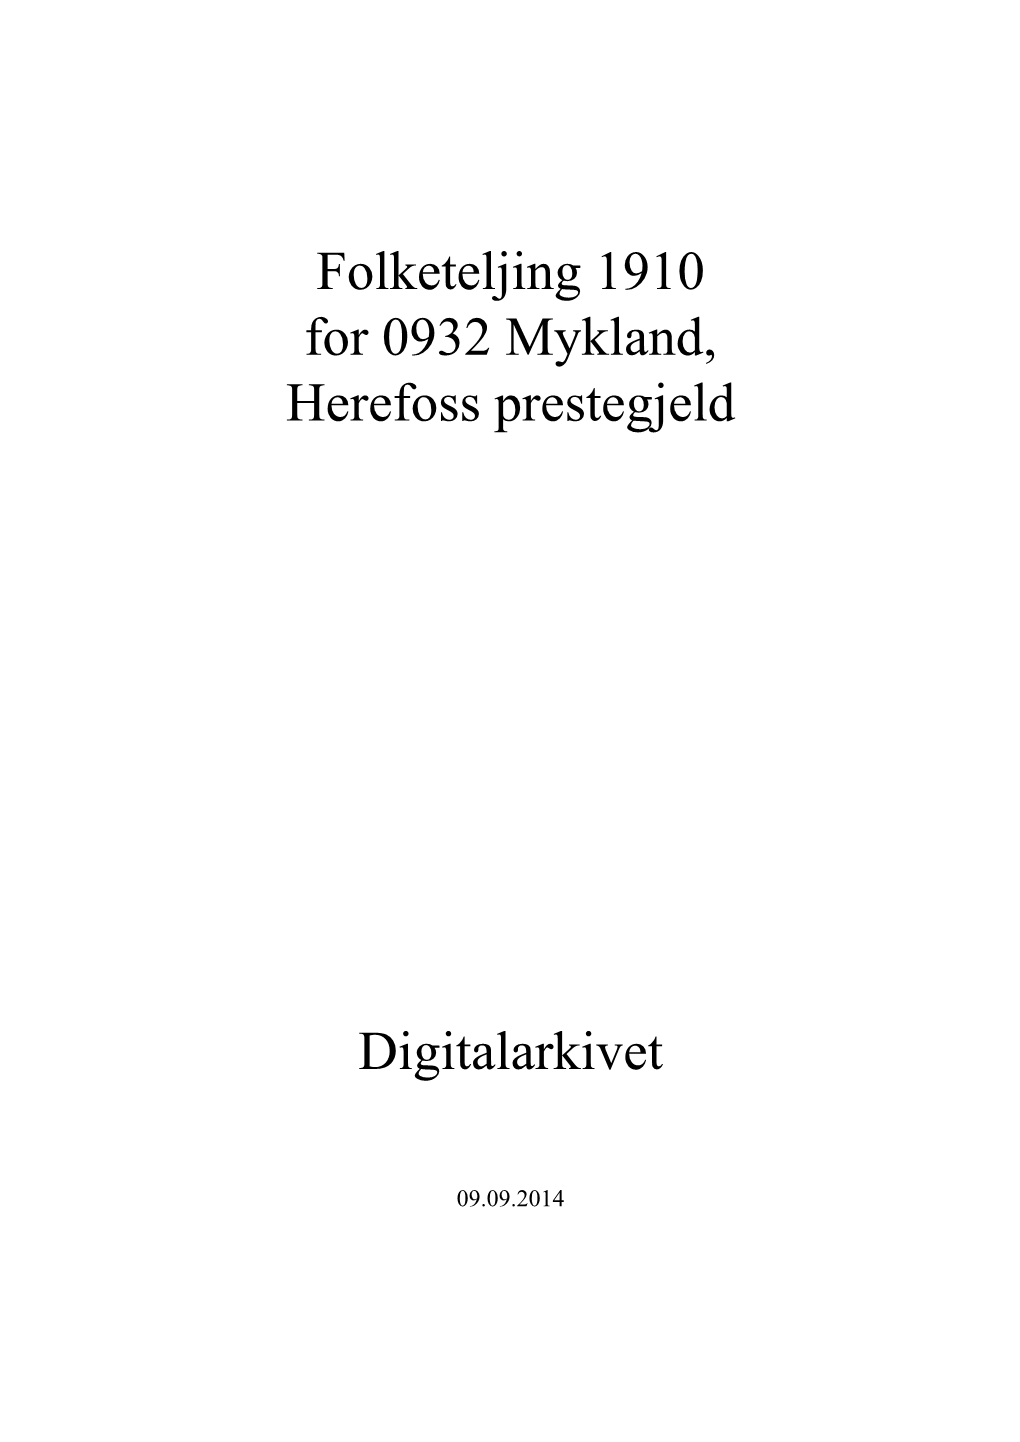 Folketeljing 1910 for 0932 Mykland, Herefoss Prestegjeld Digitalarkivet